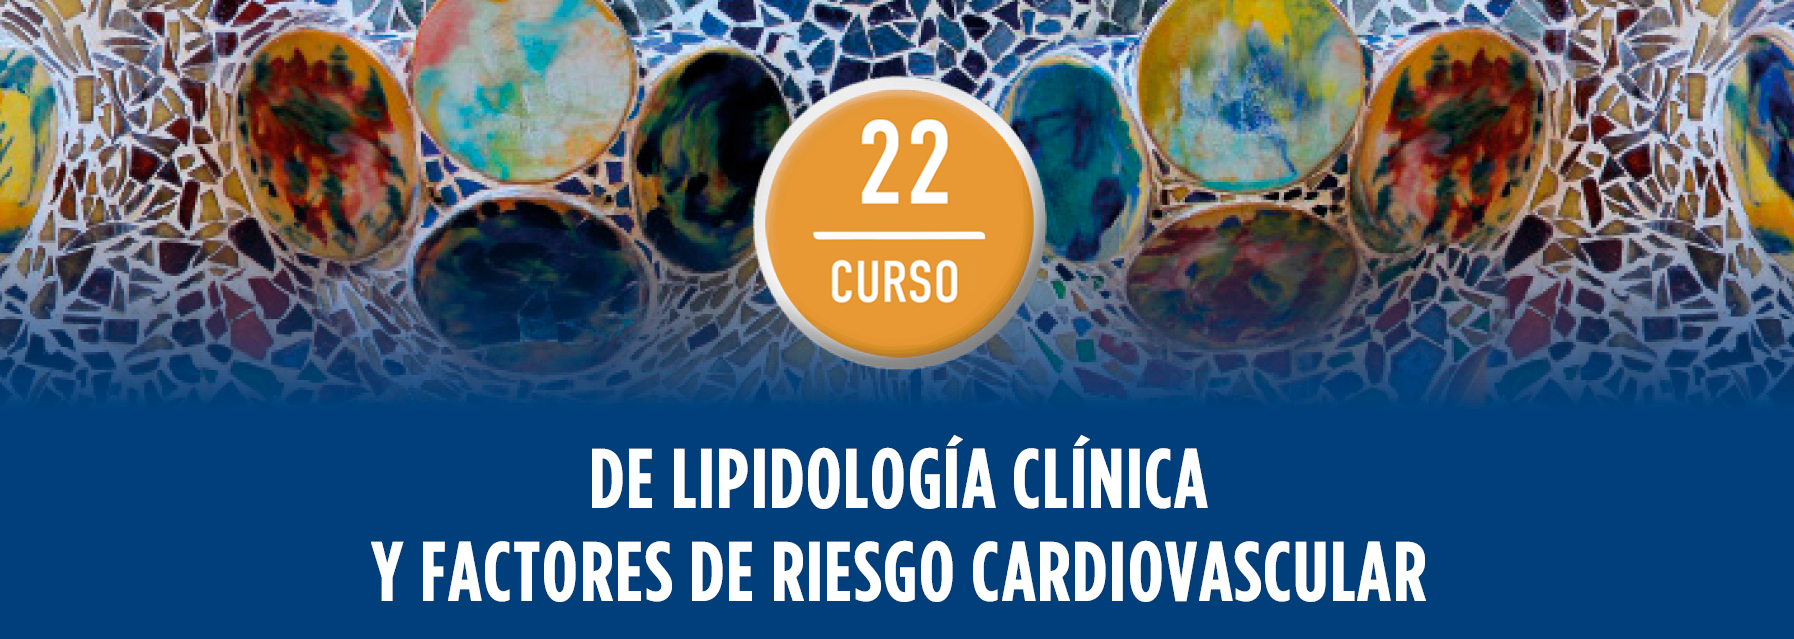 22º Curso de Lipidología Clínica y Factores de Riesgo Cardiovascular